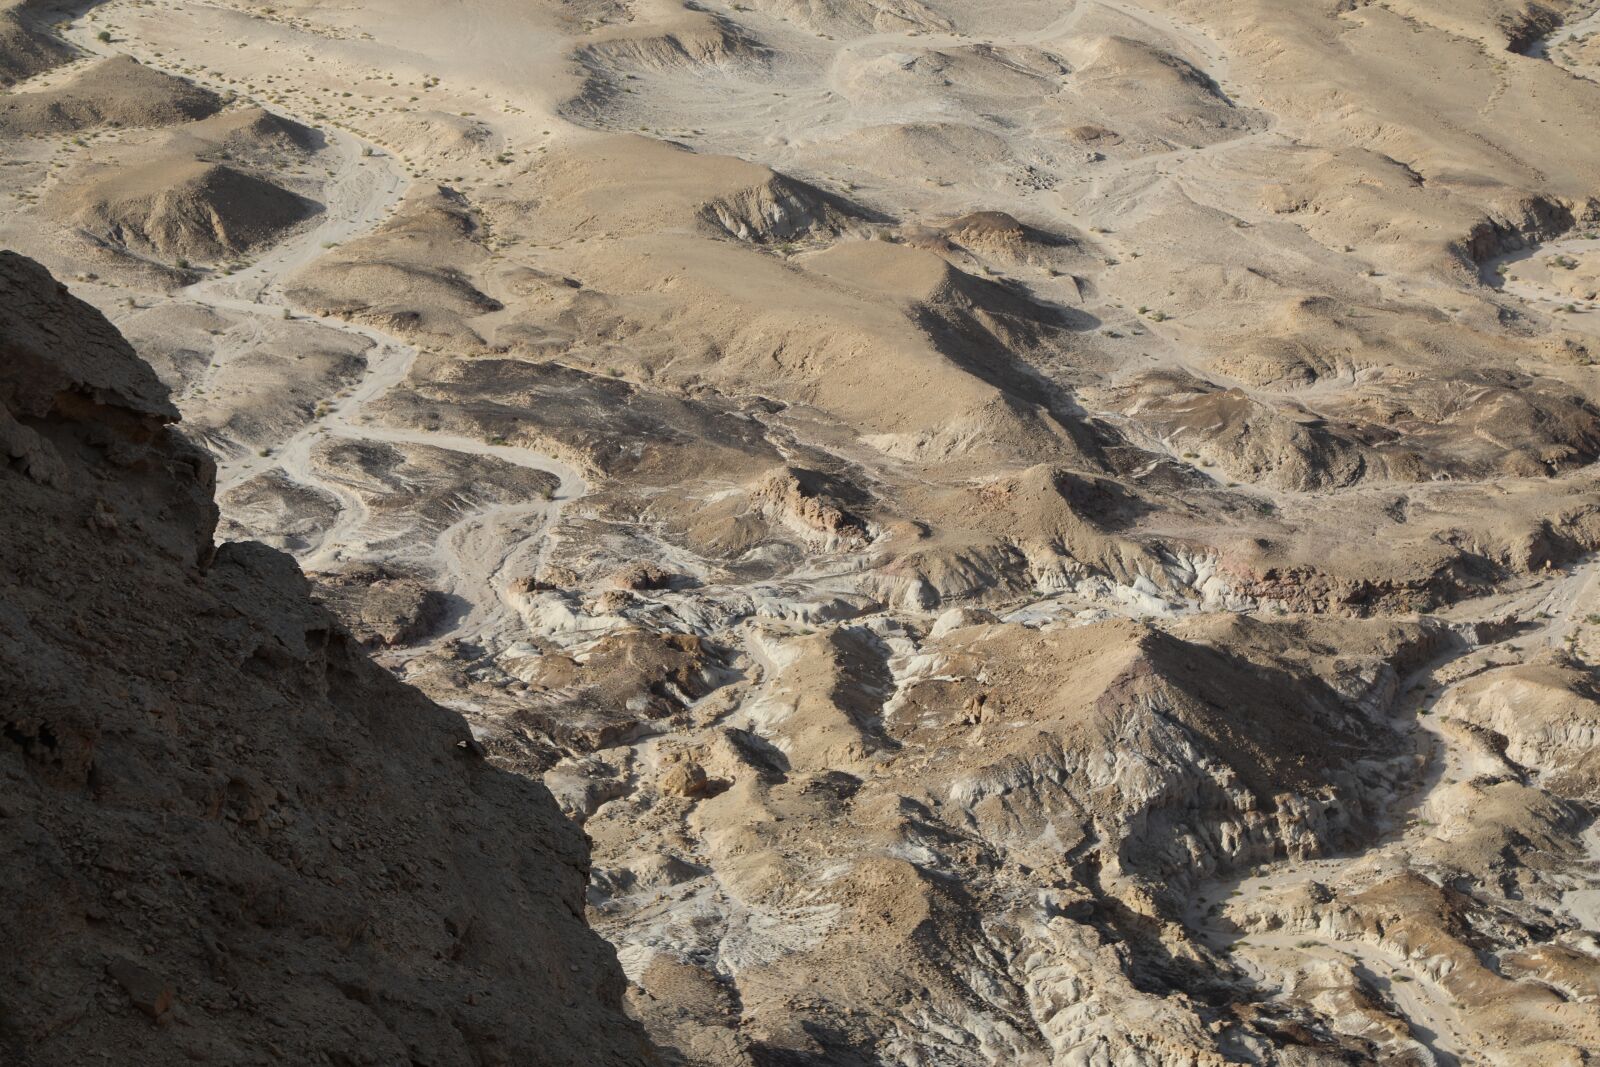 Canon EOS 5D Mark IV sample photo. Israel, desert, judaean desert photography